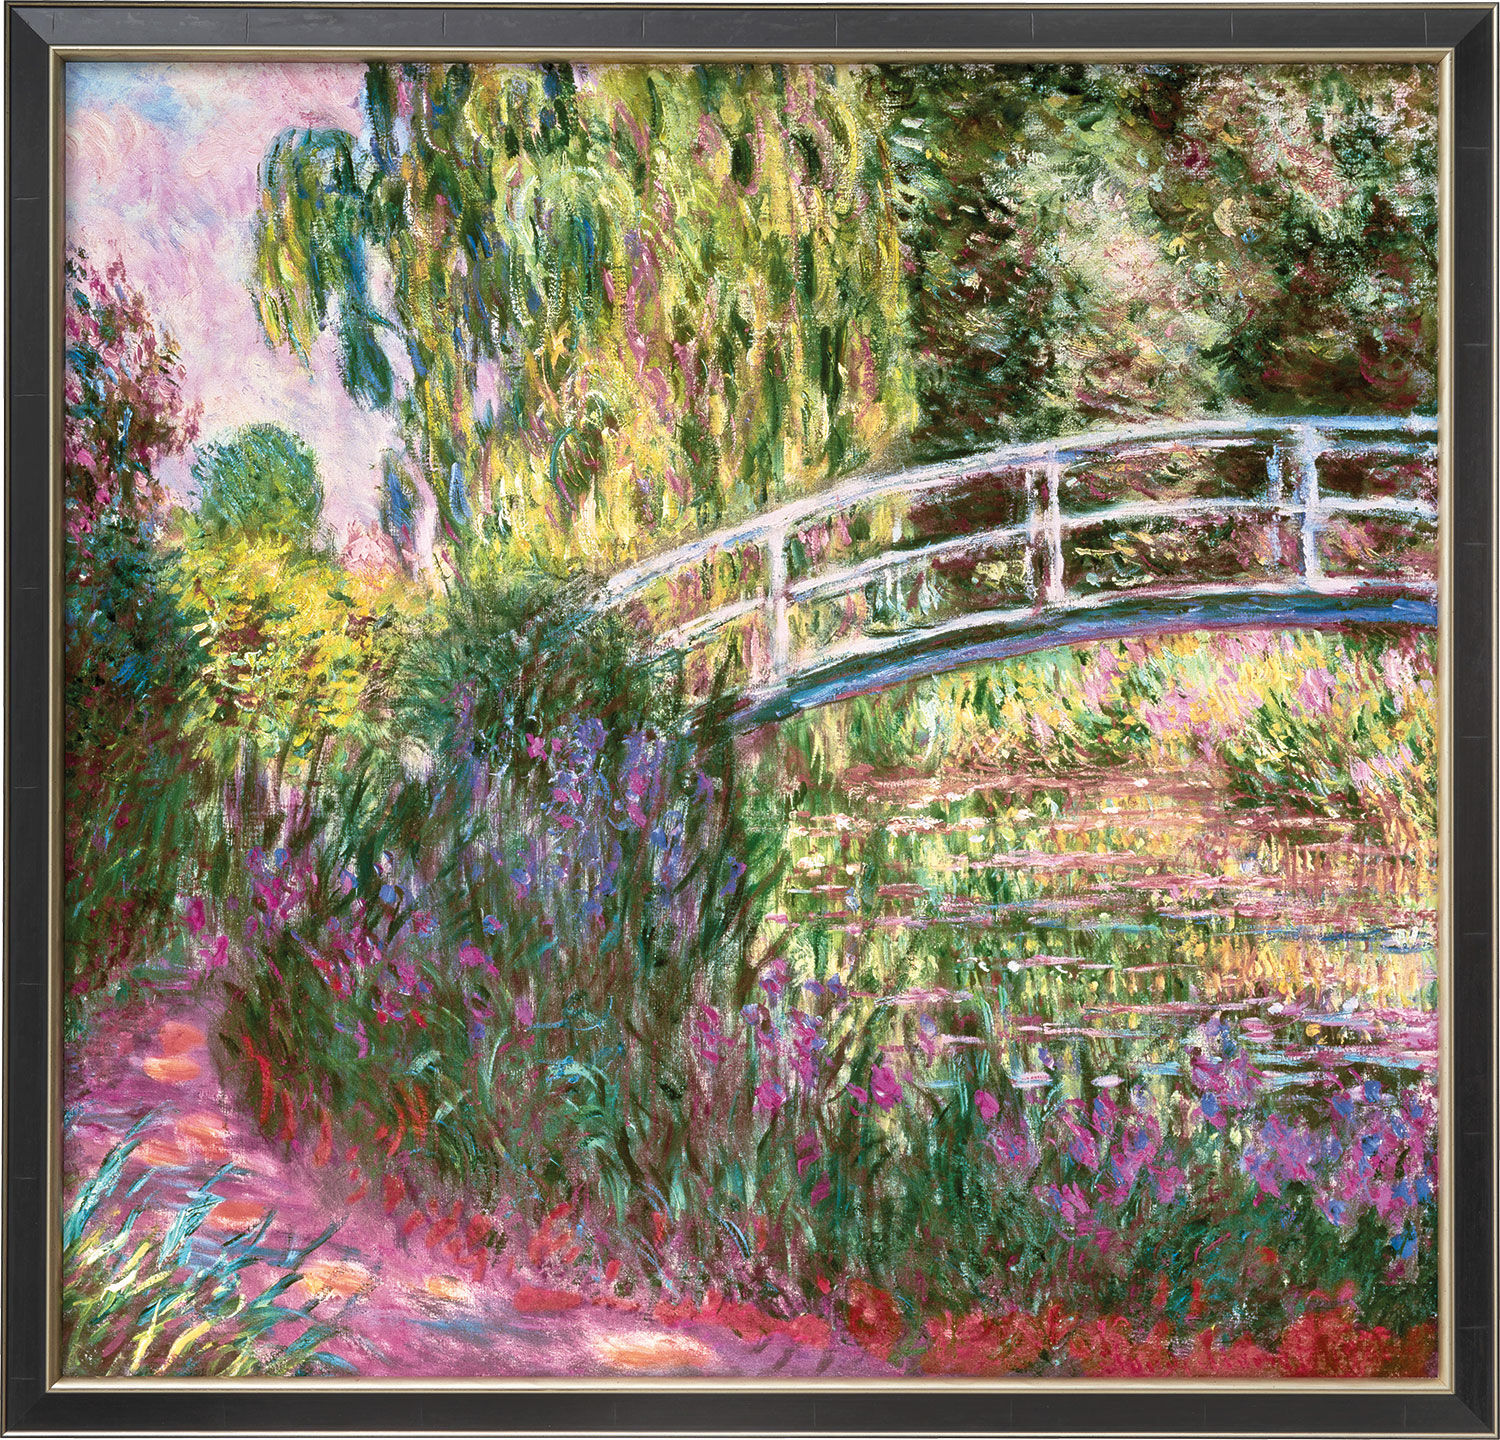 Tableau "Le pont japonais dans le jardin de Giverny" (vers 1900), version encadrée en noir et argent von Claude Monet